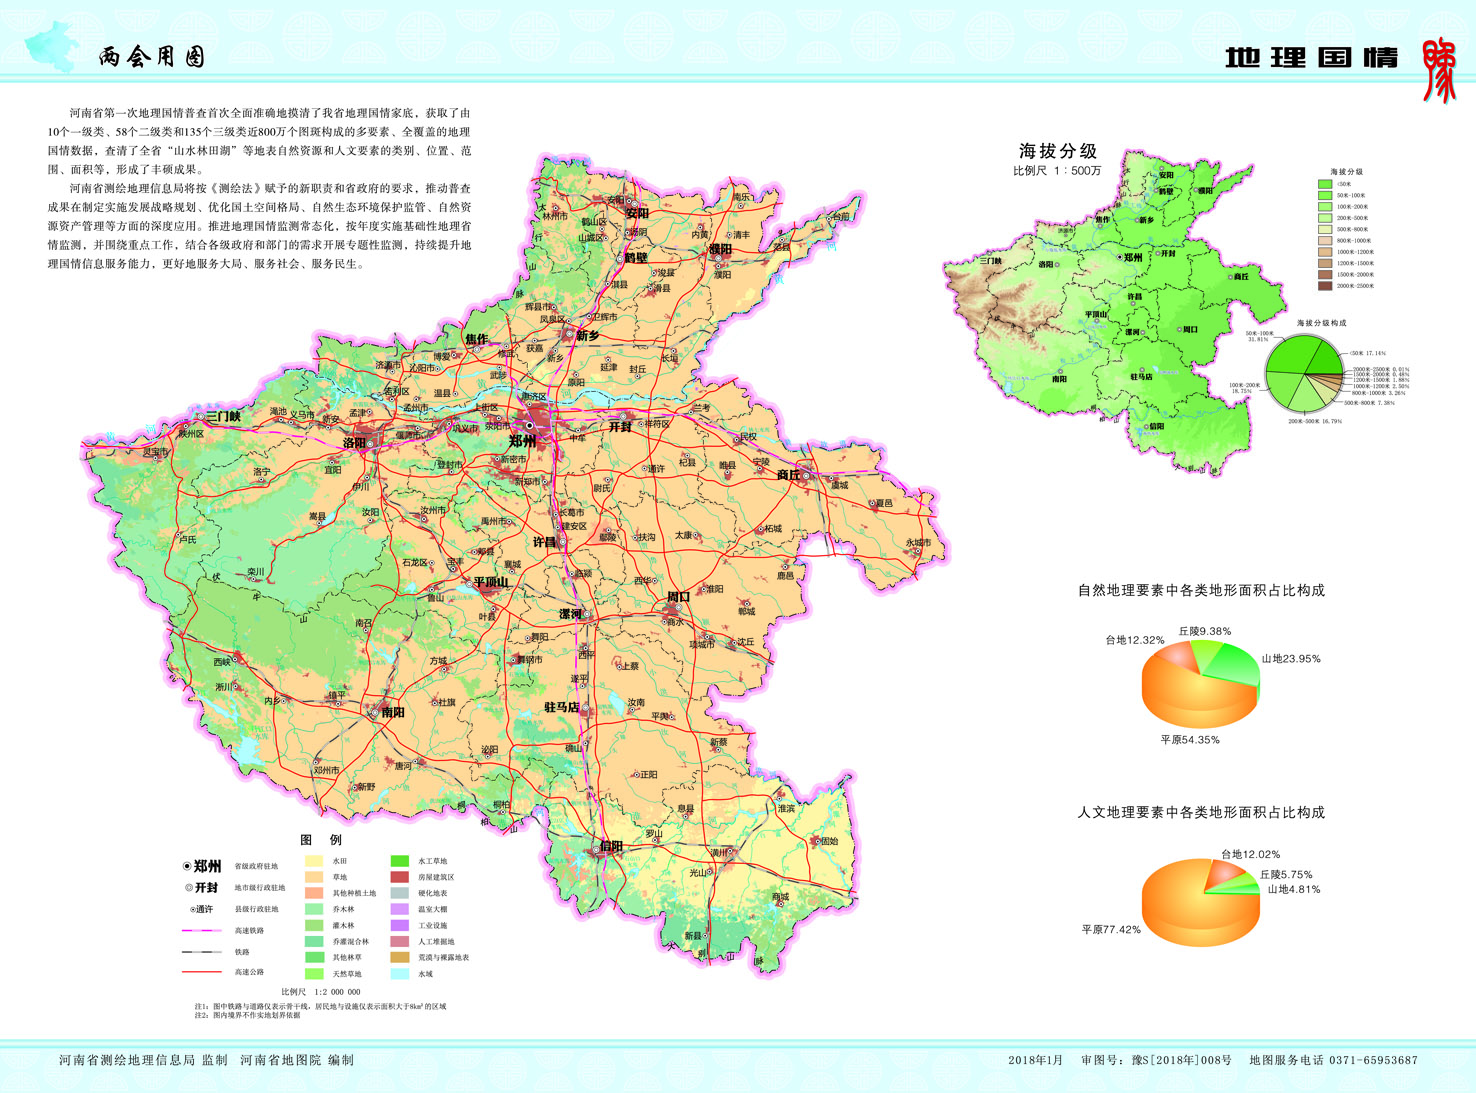 河南省两会地图亮相 介绍河南咱可以拿着地图